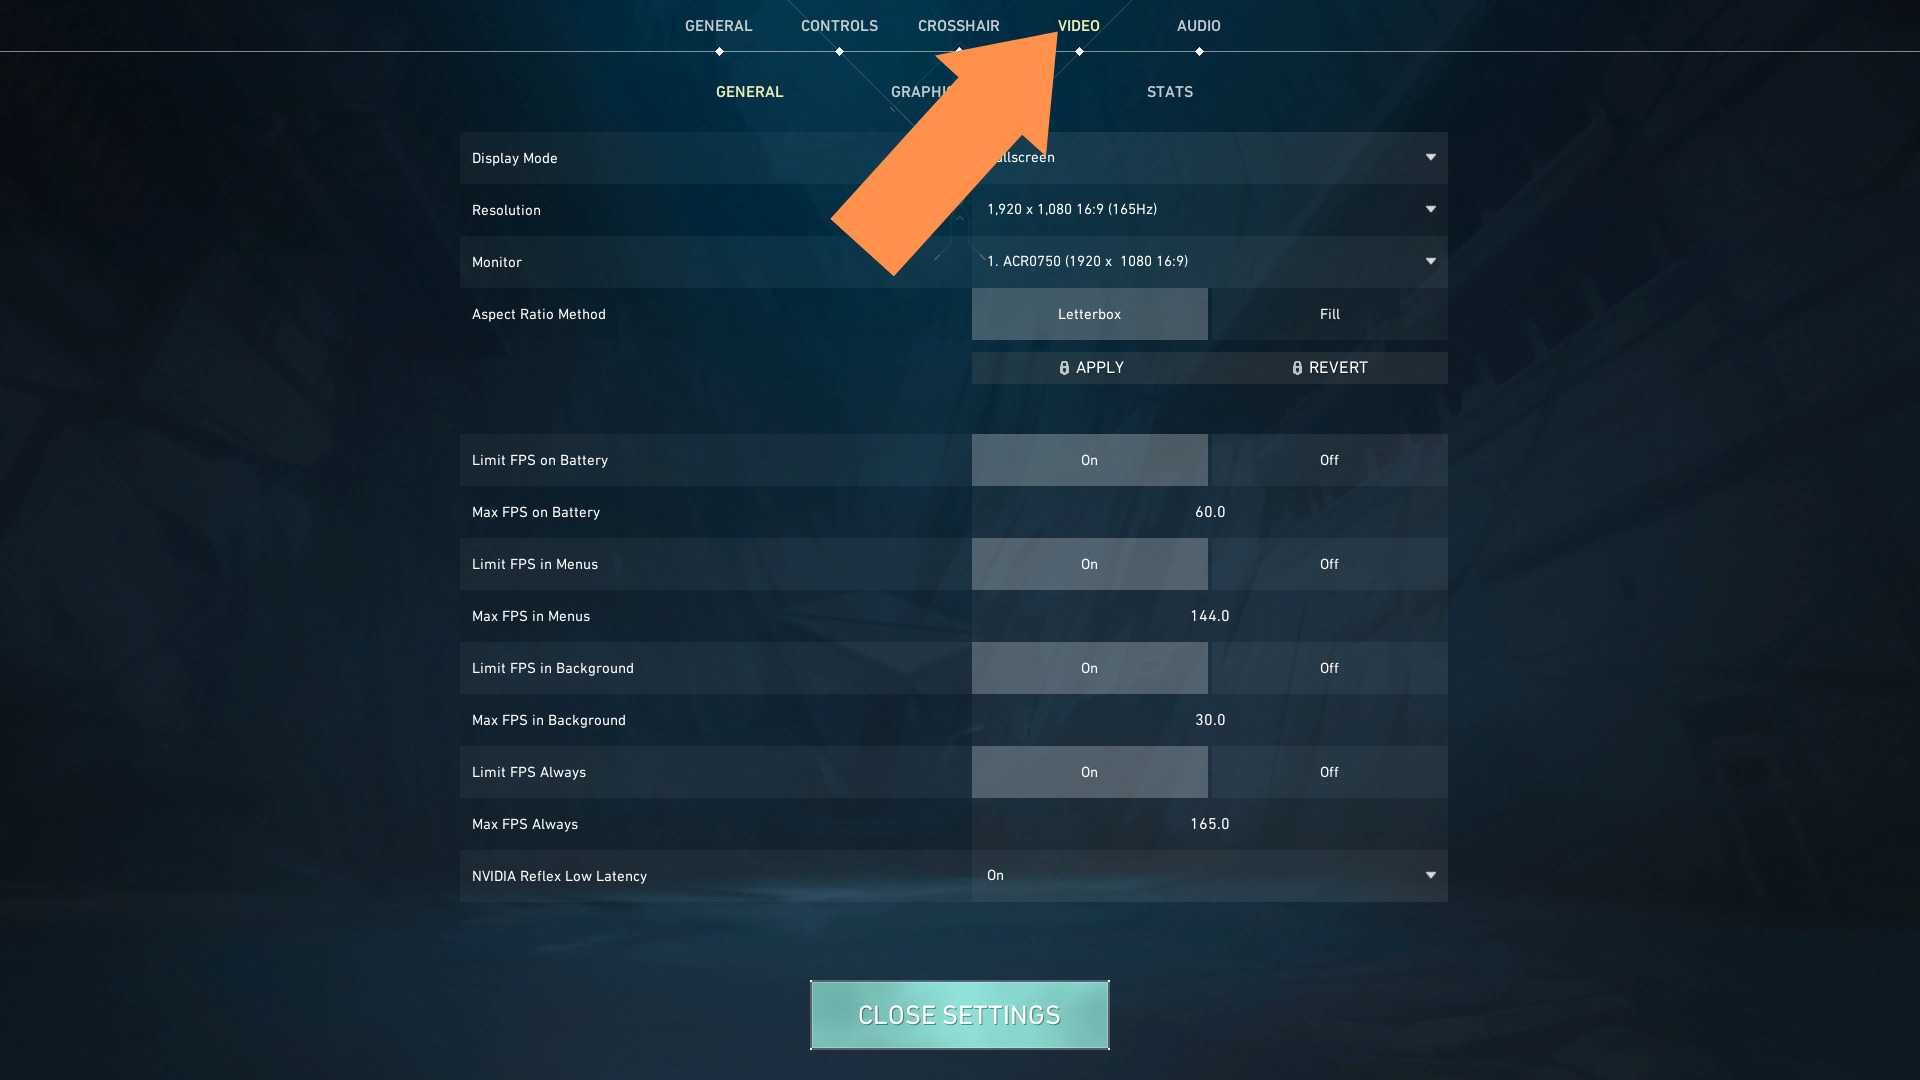 A screenshot of Valorant's settings menu